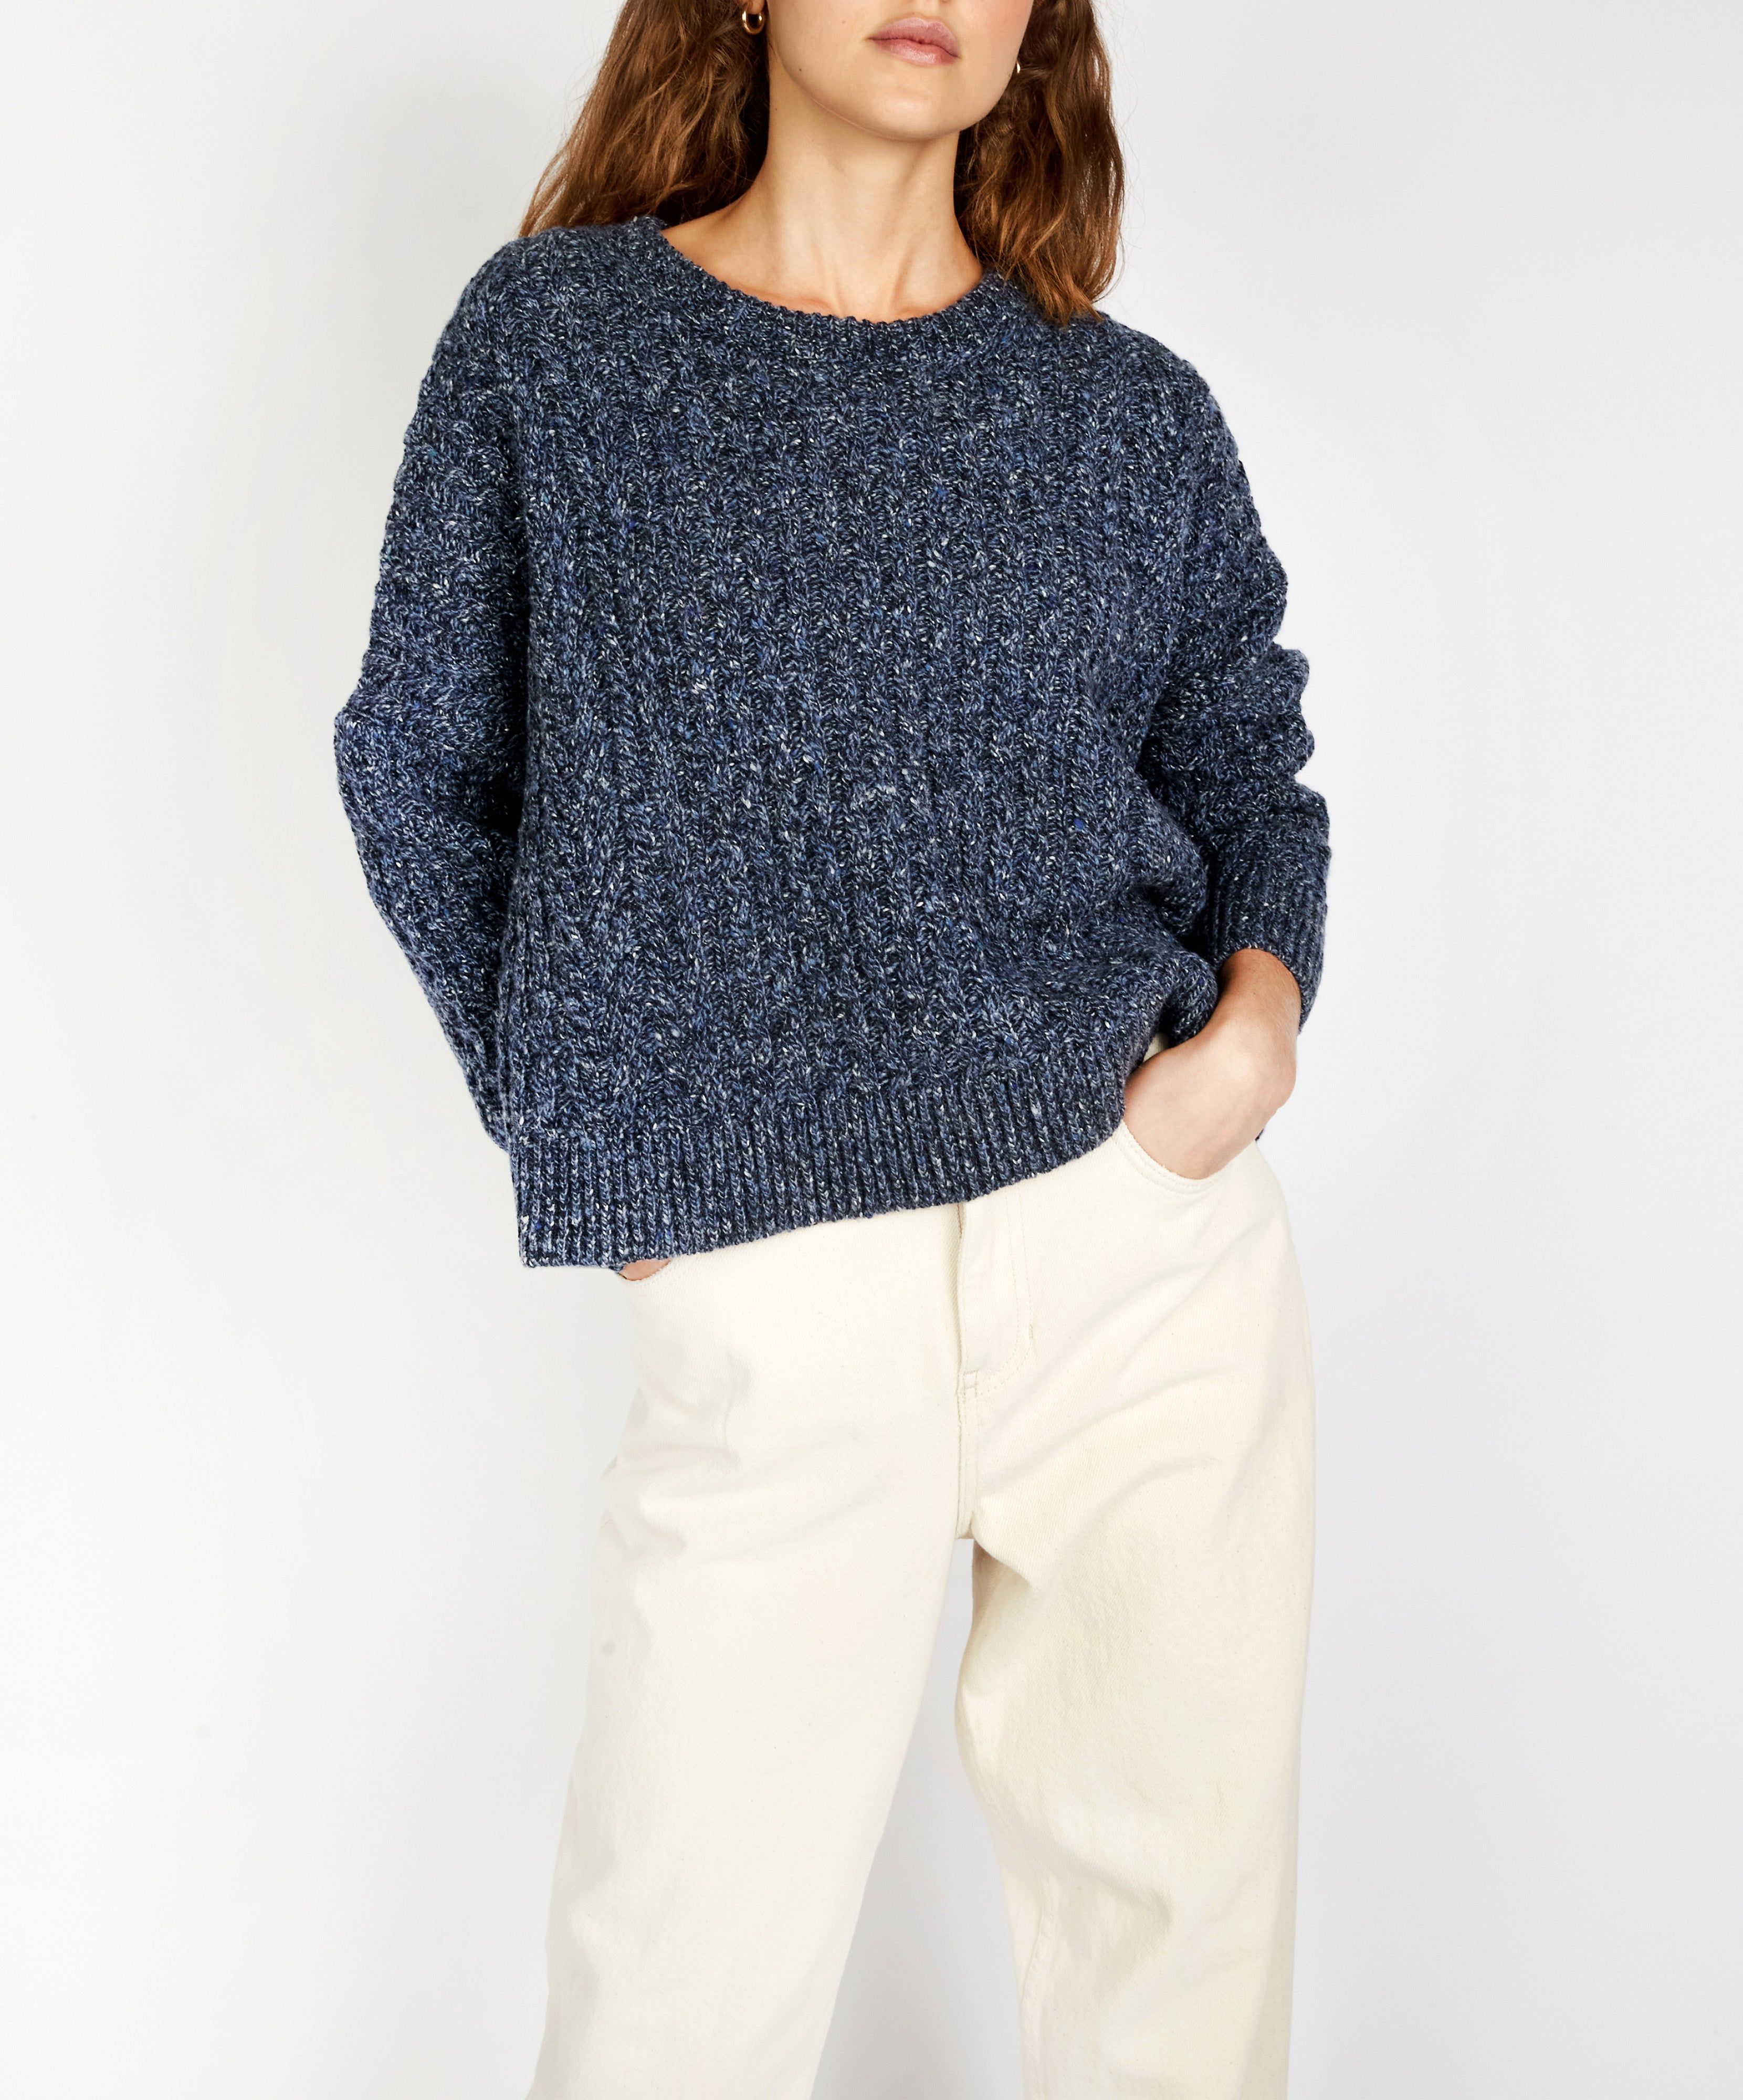 IrelandsEye Knitwear Sorrell Cropped Aran Sweater